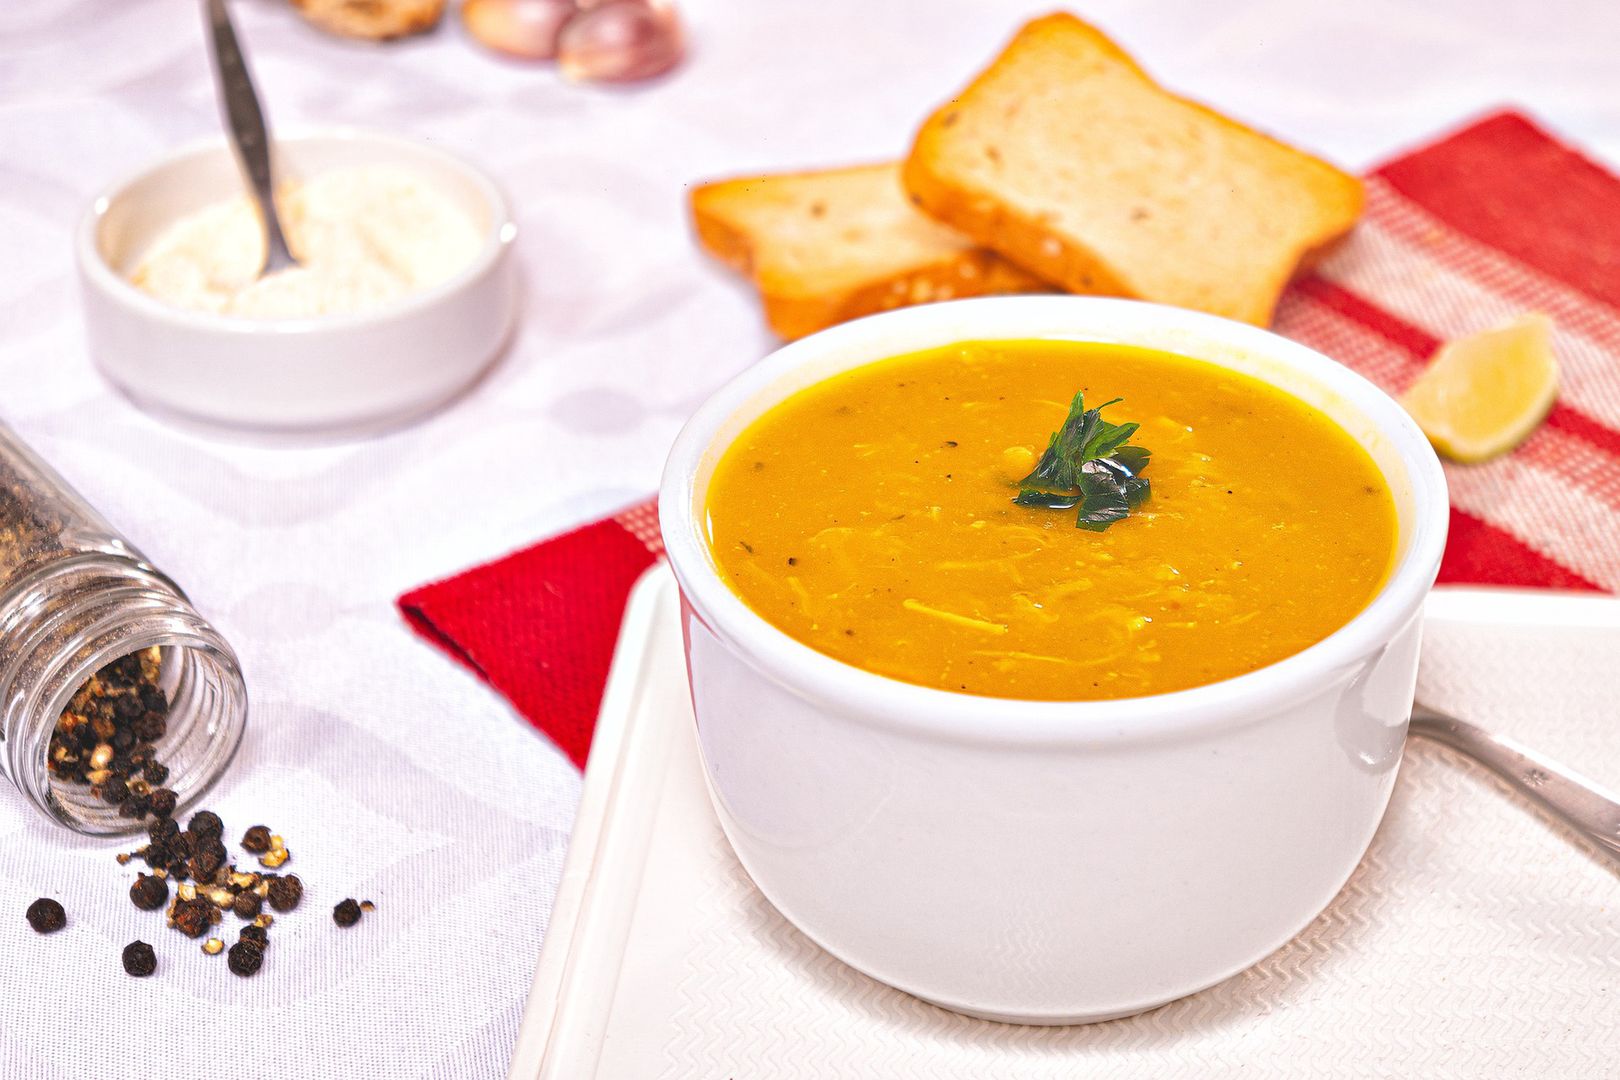 Szybka zupa w 15 minut. Tylko 35 kcal w porcji